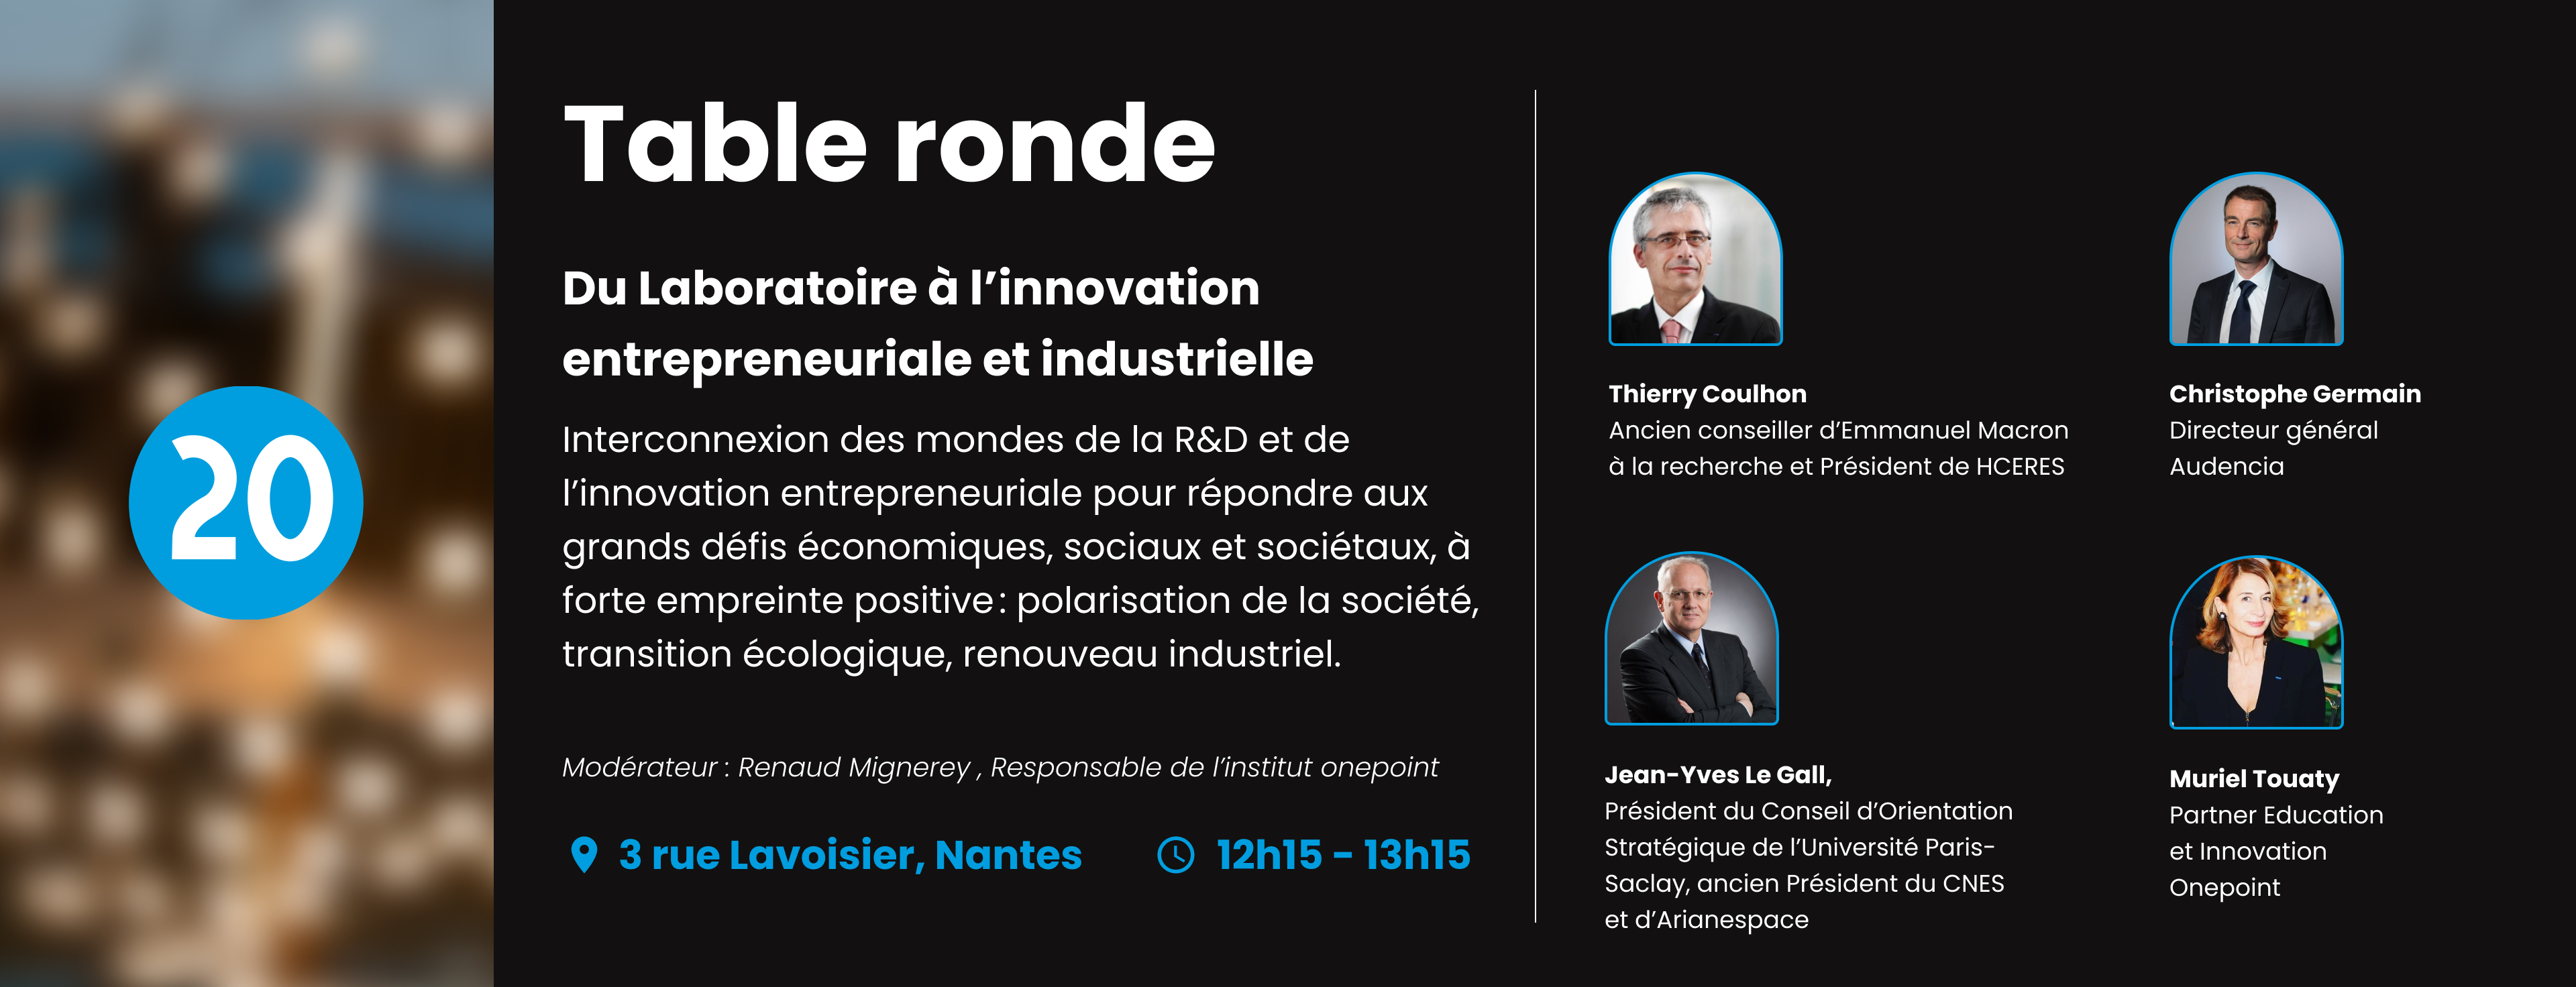 Image de la table ronde Highlight de la R&D à l'innovation entrepreneuriale et industrielle de l'inauguration onepoint à Nantes